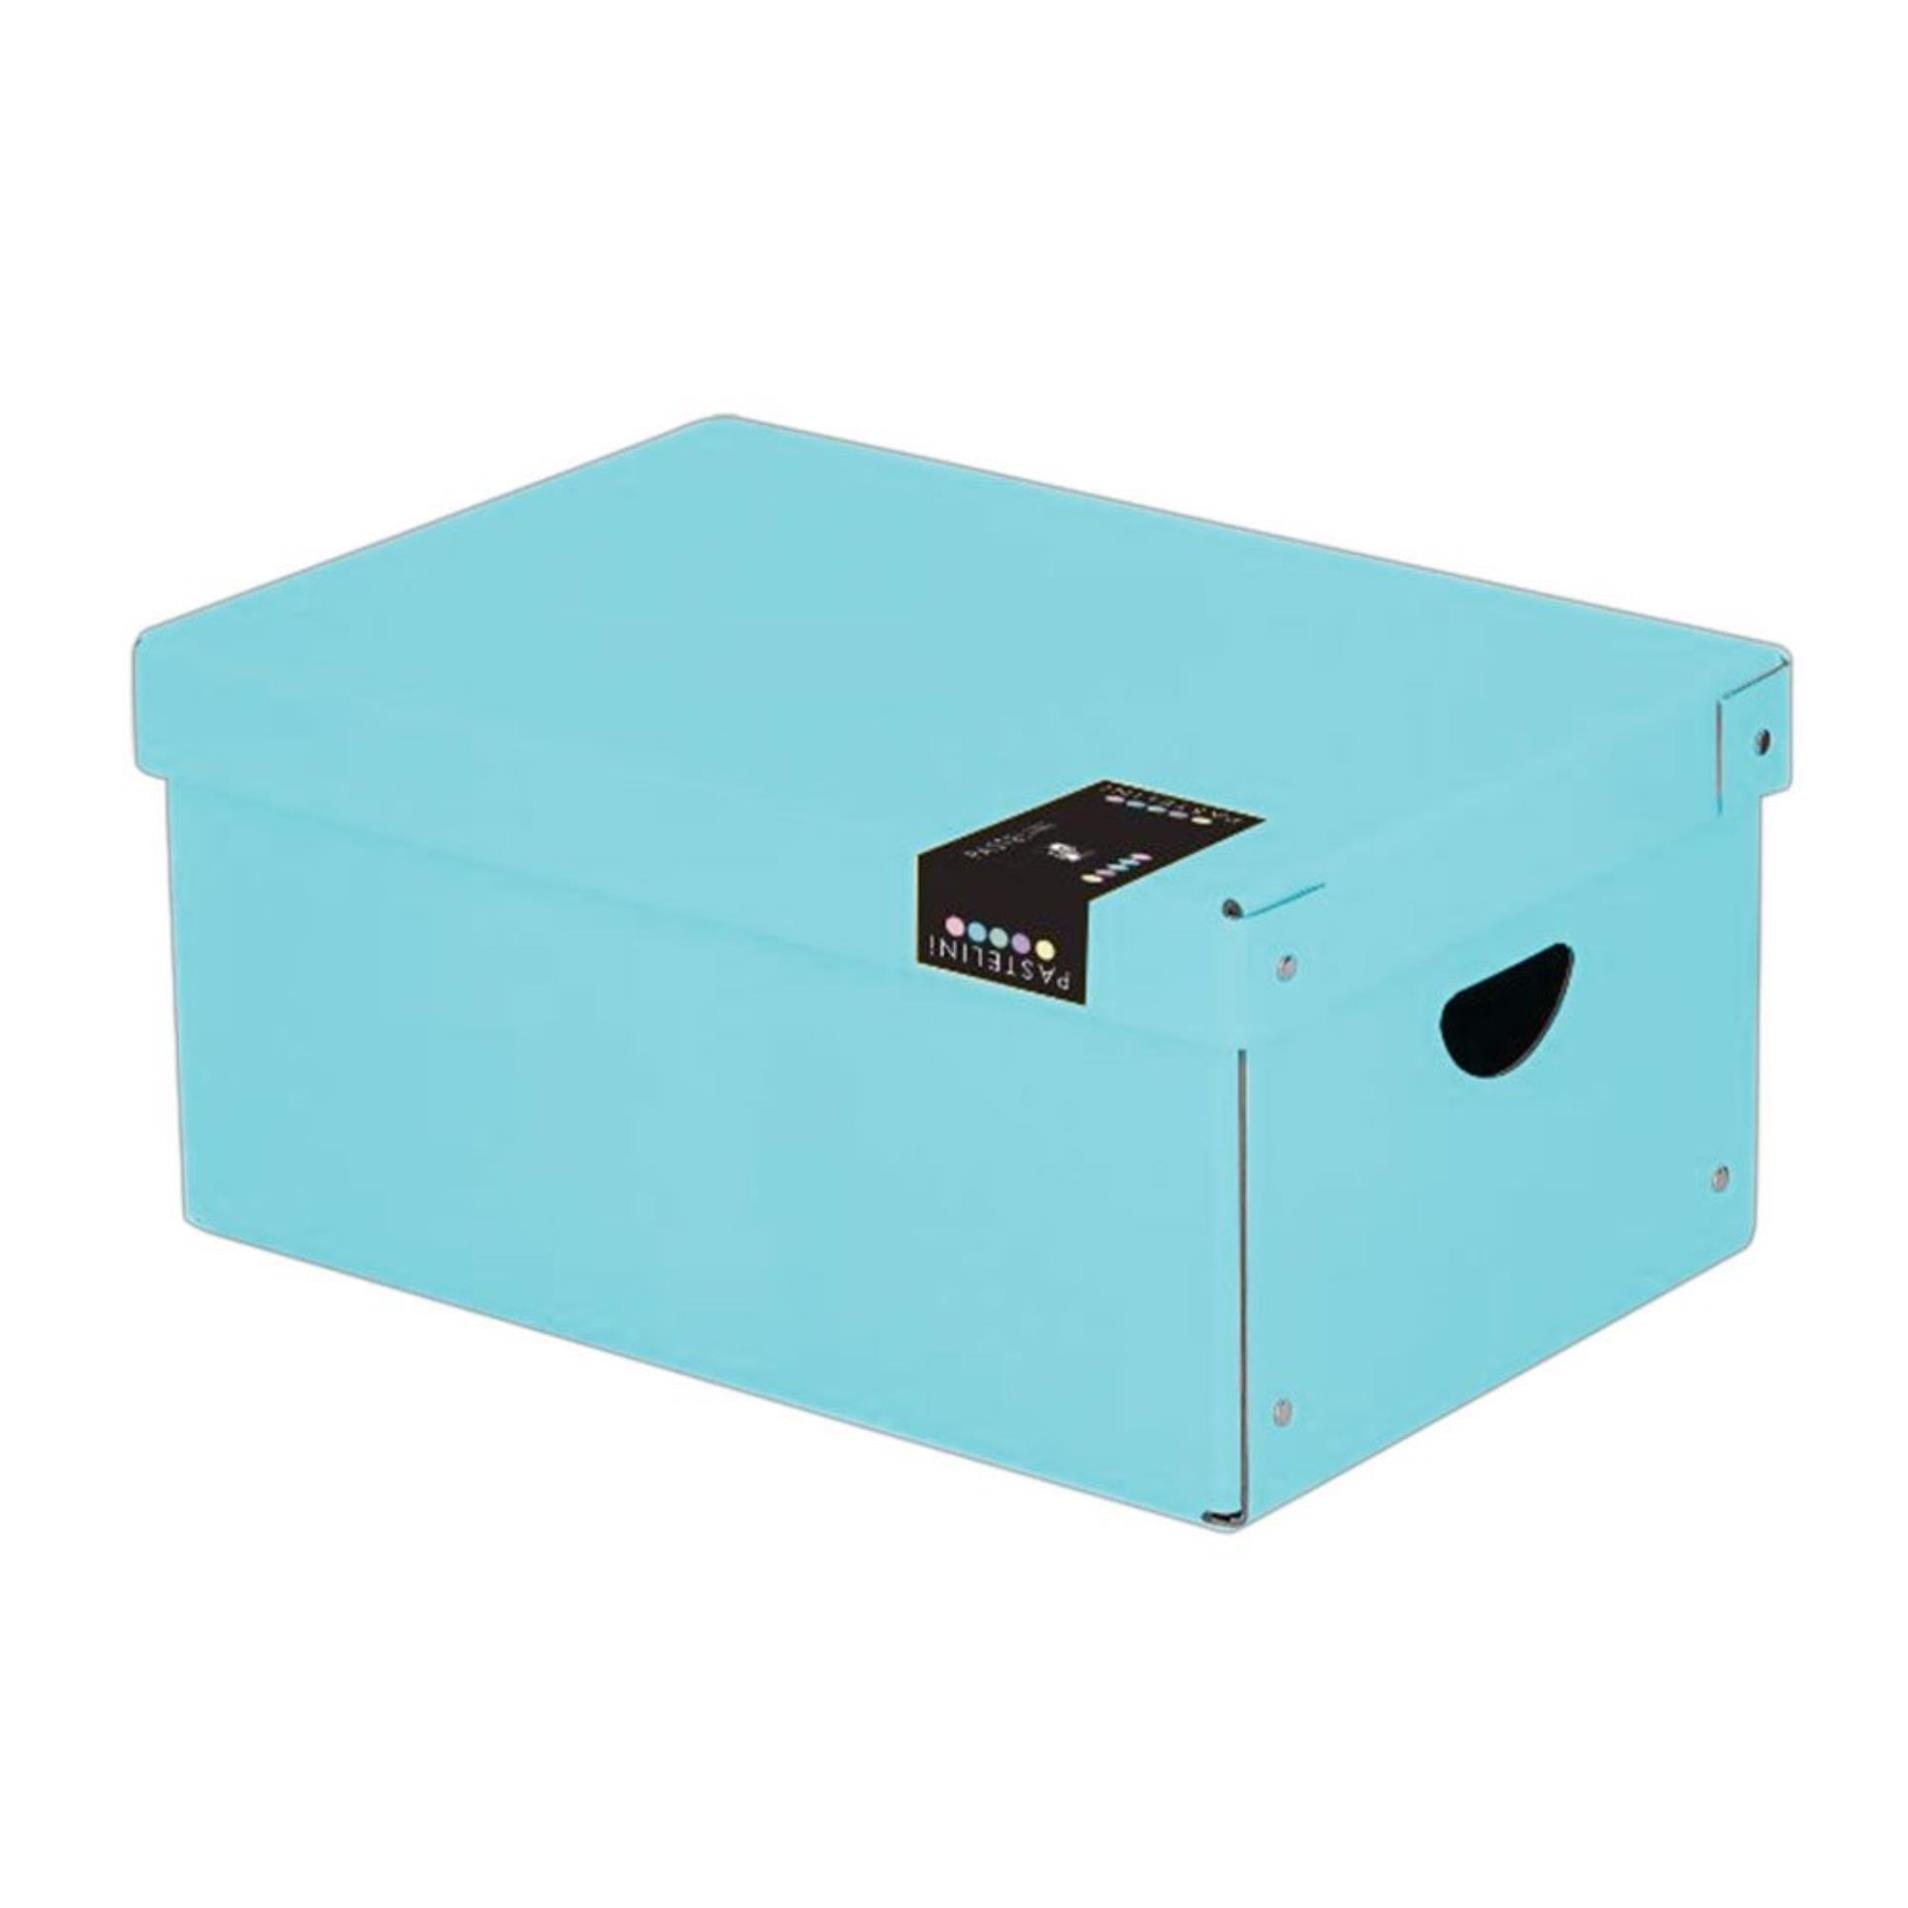 Karton P+P Krabice Pastelini - velká, modrá